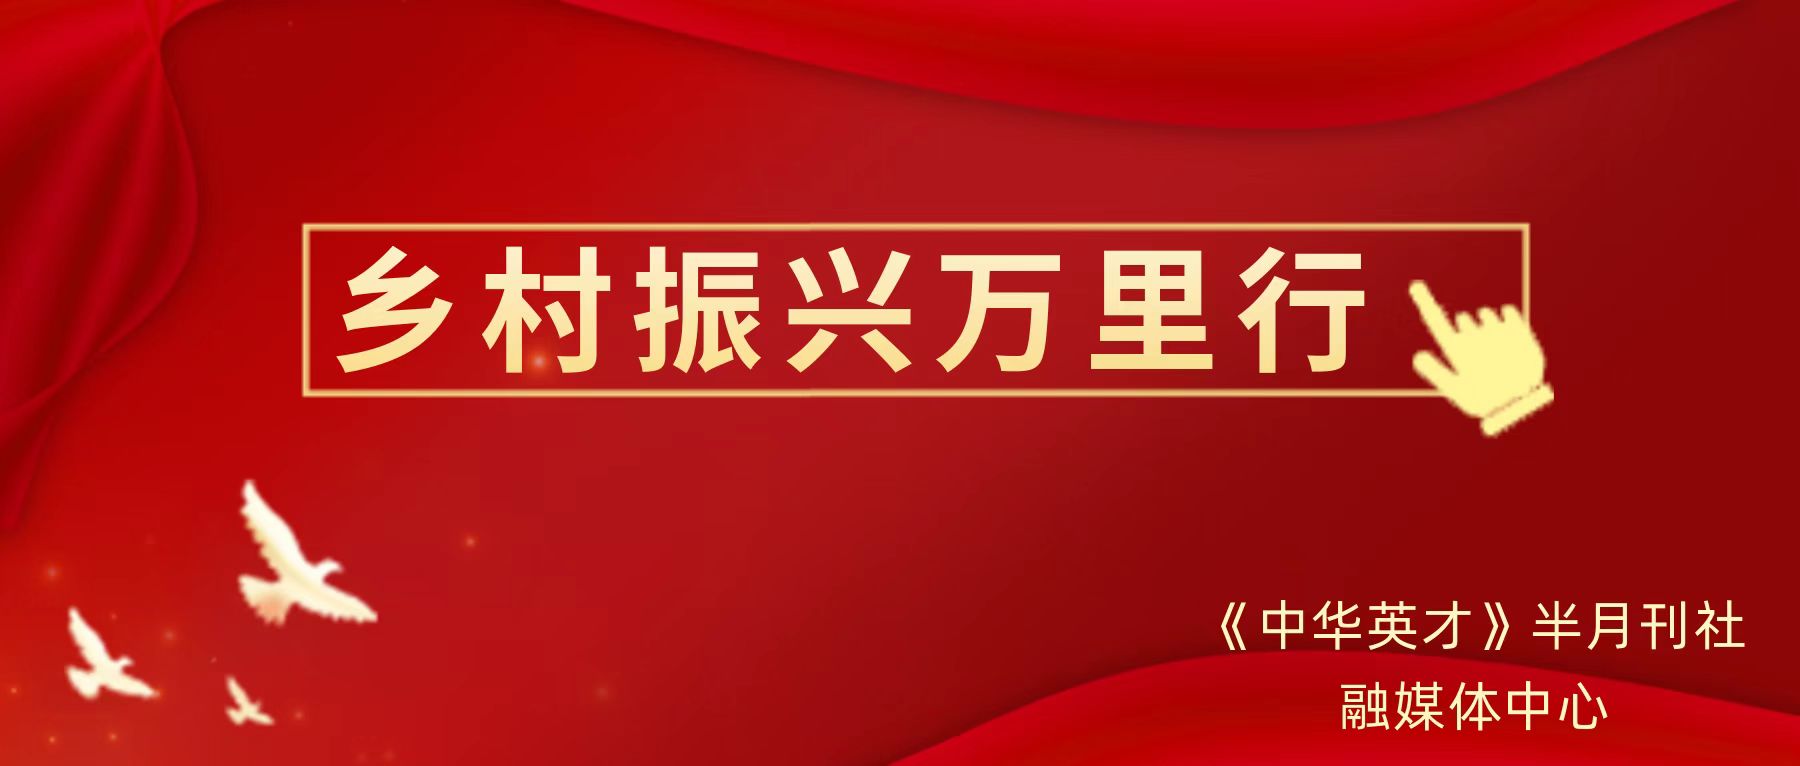 《中华英才》半月刊社融媒体中心正式启动乡村振兴万里行活动